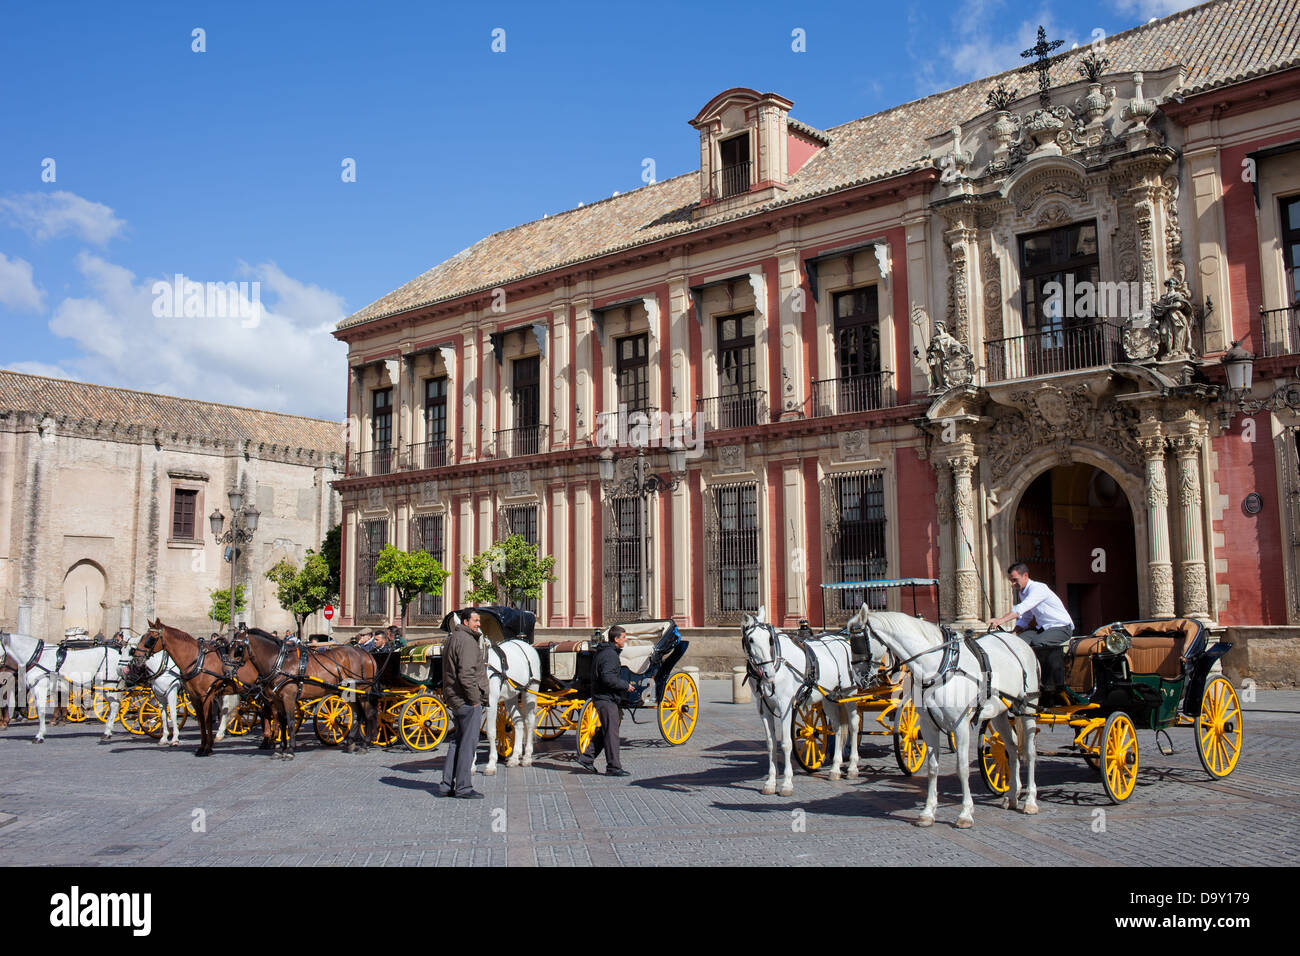 Ciudad Vieja de Sevilla pintoresca arquitectura histórica (zona próxima a la Catedral) y carruajes de caballos, Andalucía, España. Foto de stock